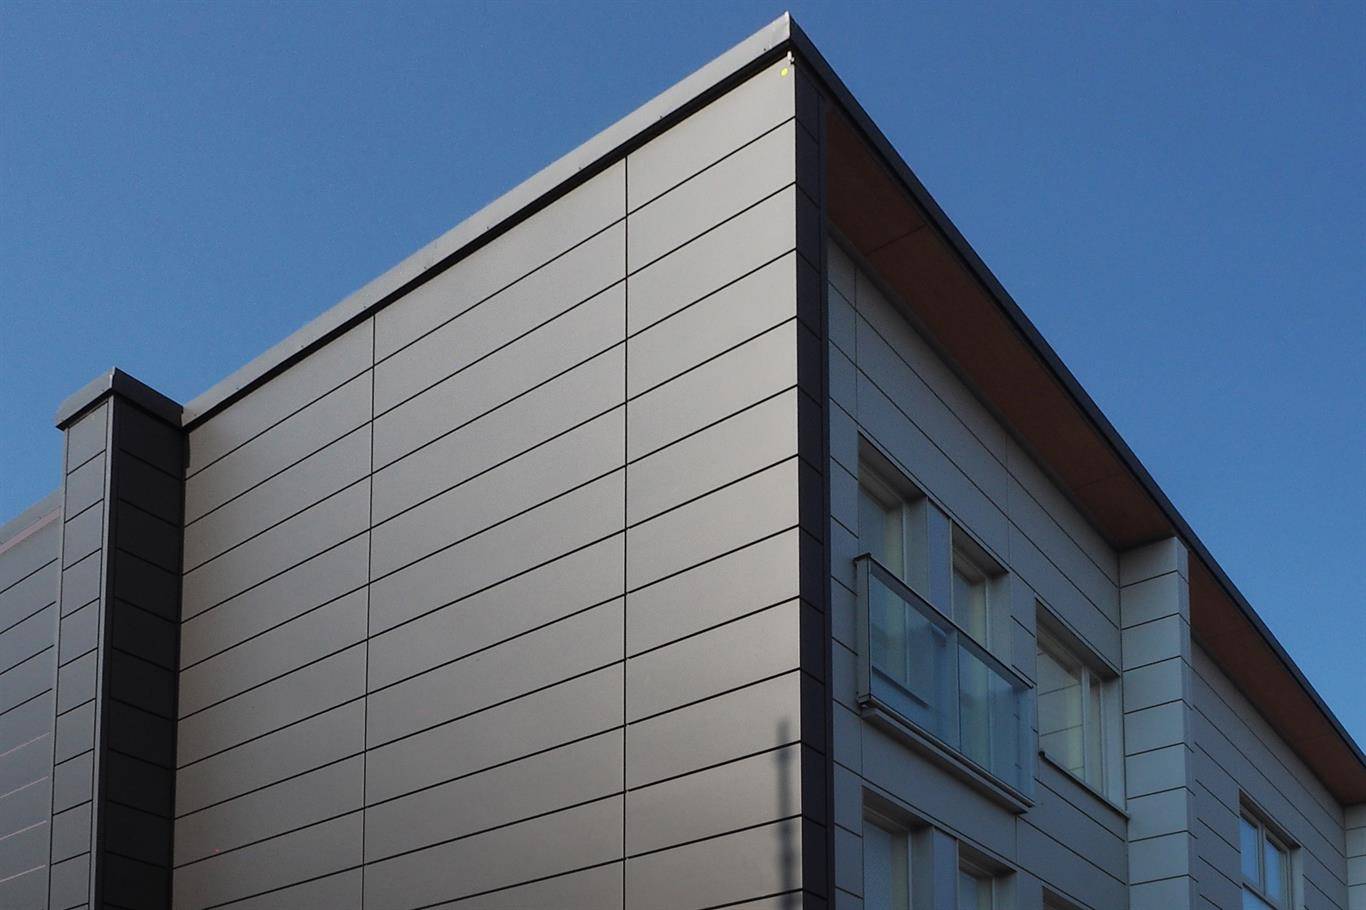 Устройство фасадов из композитных панелей | онлайн-журнал о ремонте и дизайне